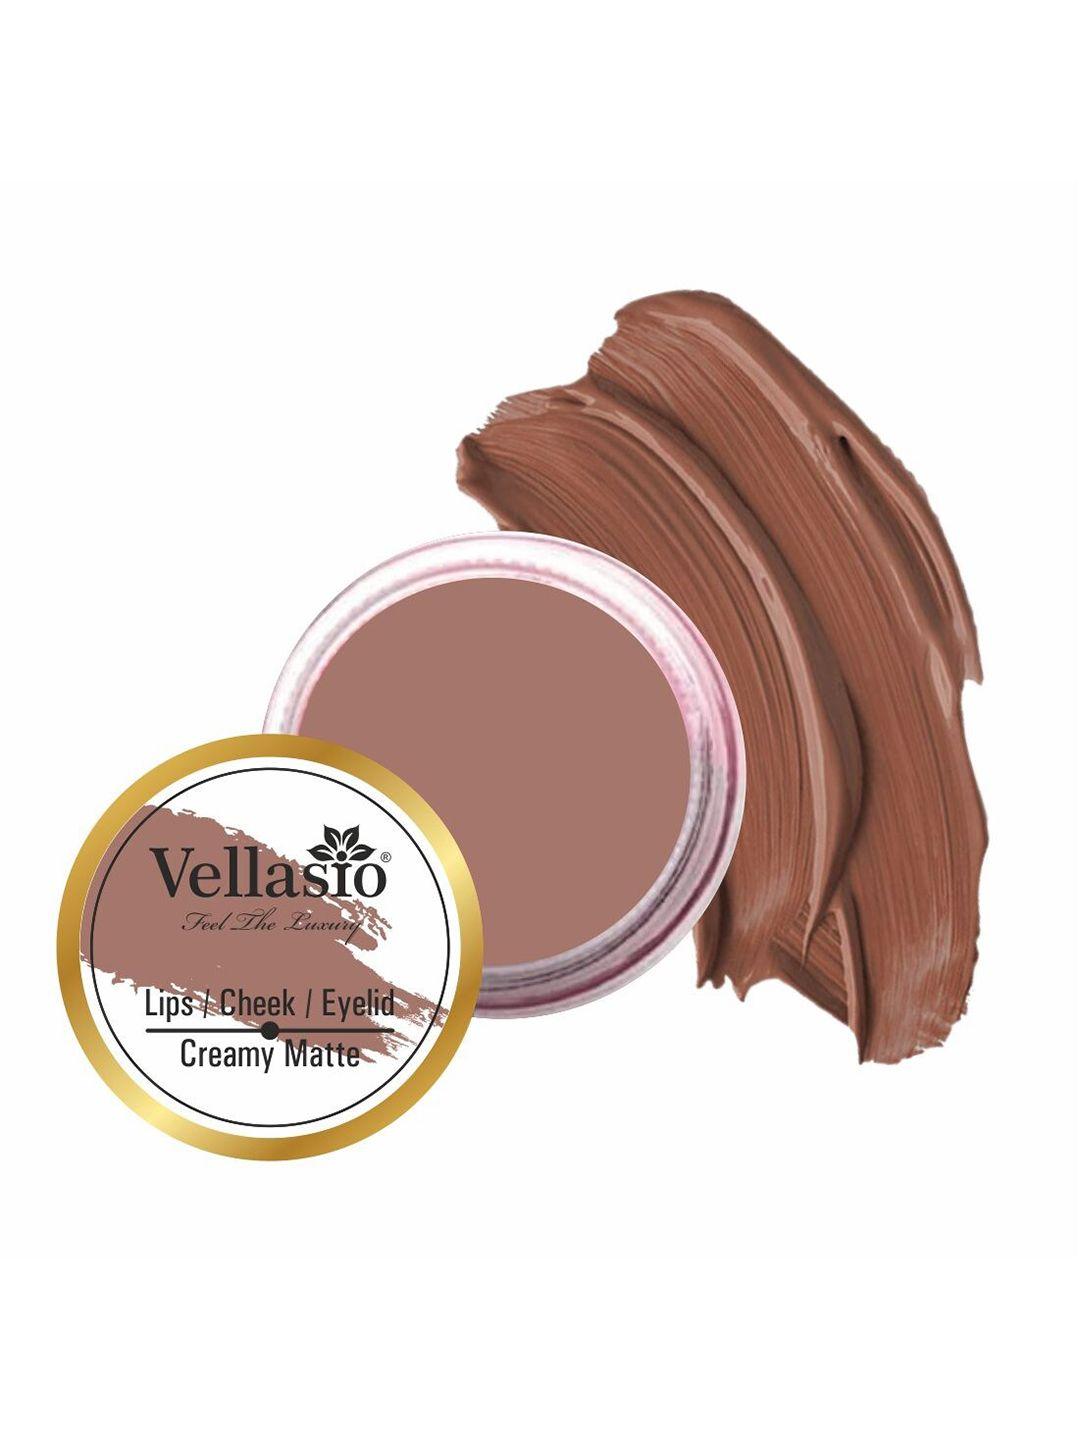 vellasio creamy matte spf 30 lip cheek & eye tint 7g - nude brown